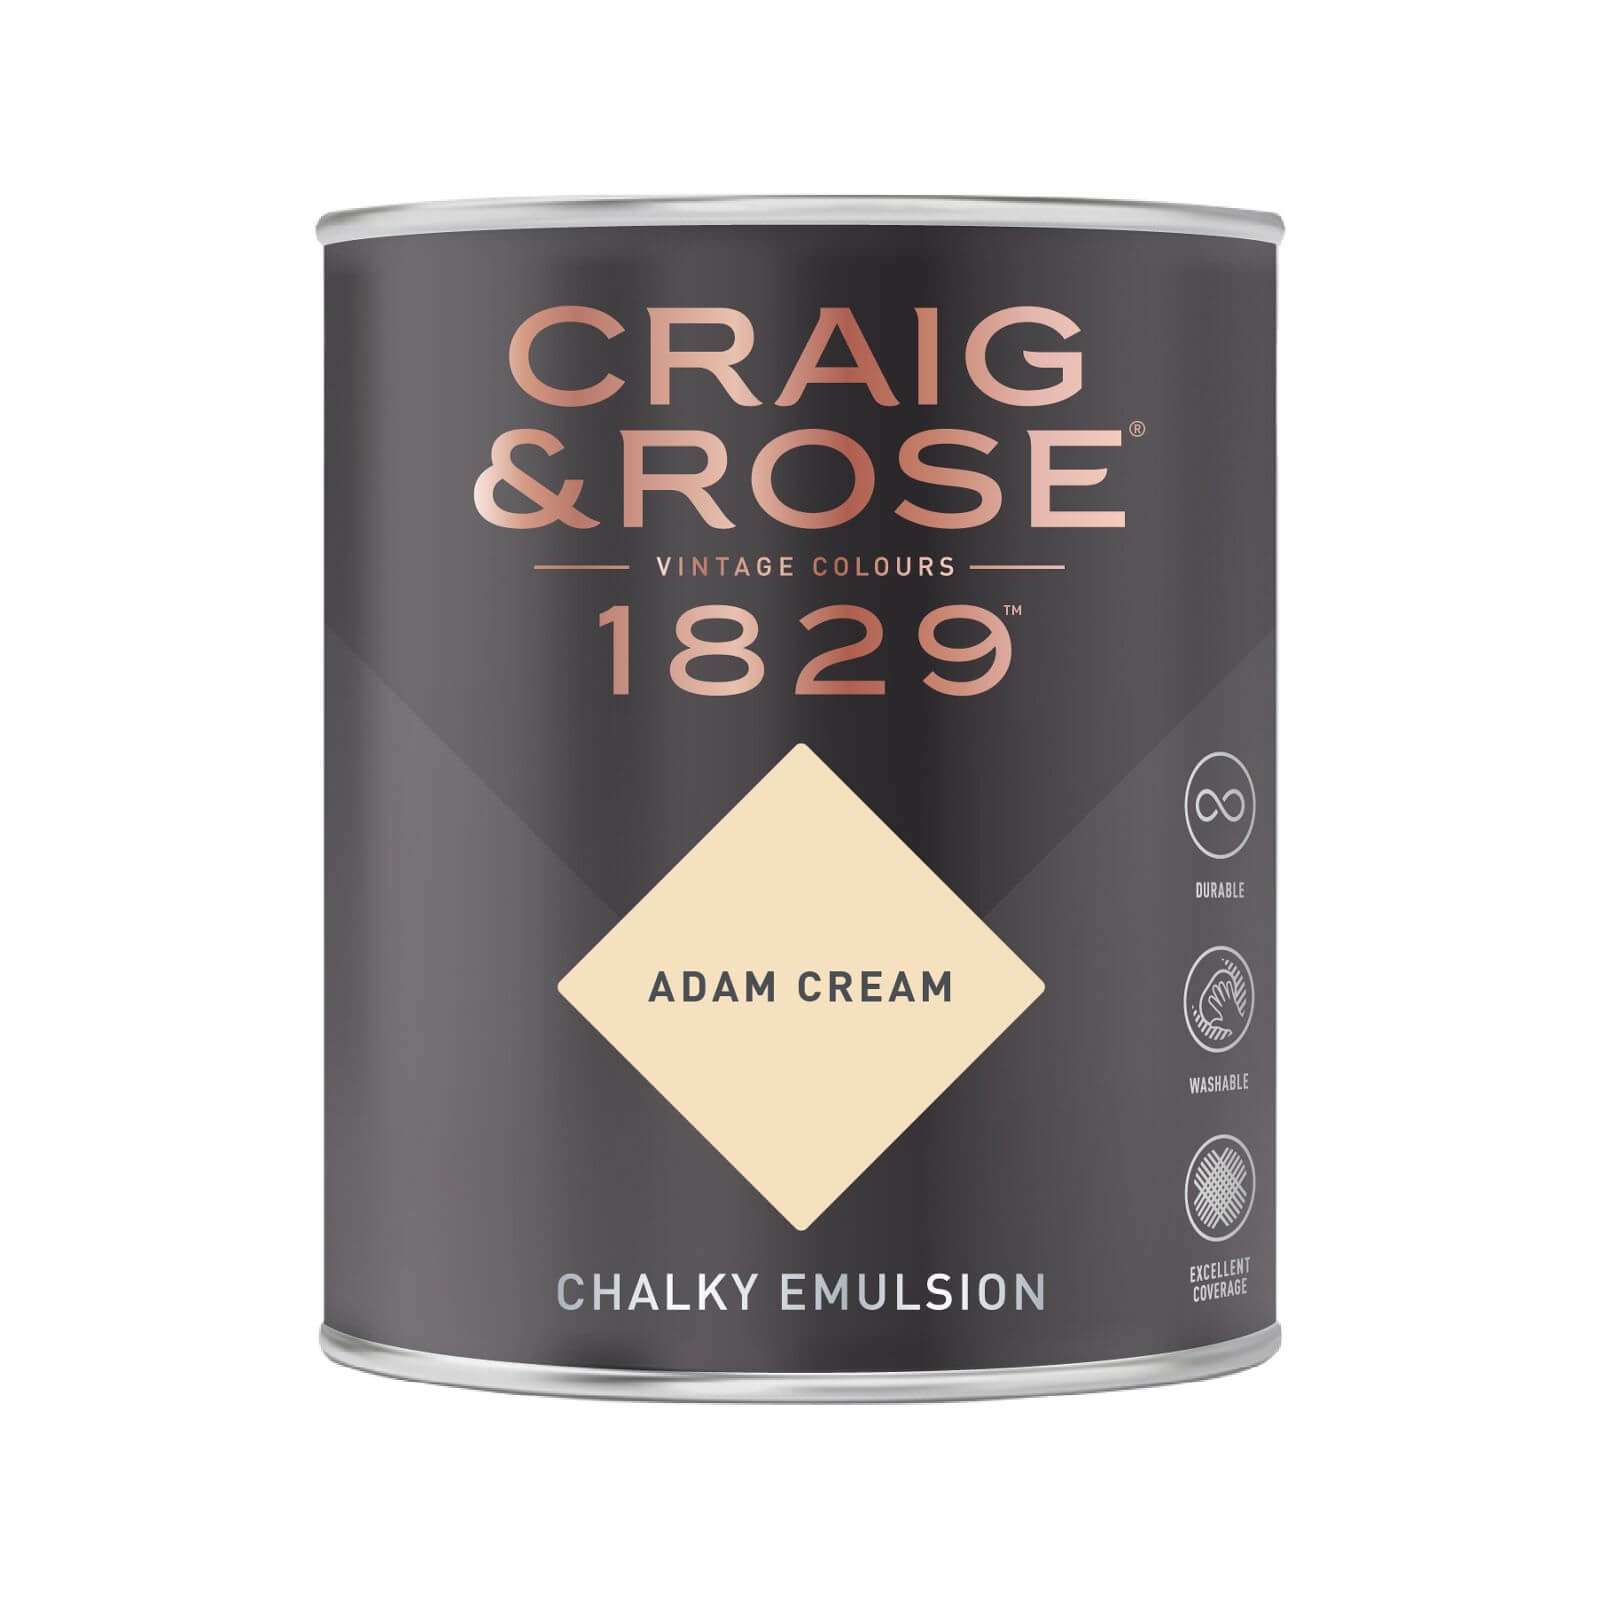 Craig & Rose 1829 Chalky Emulsion Paint Adam Cream - 750ml